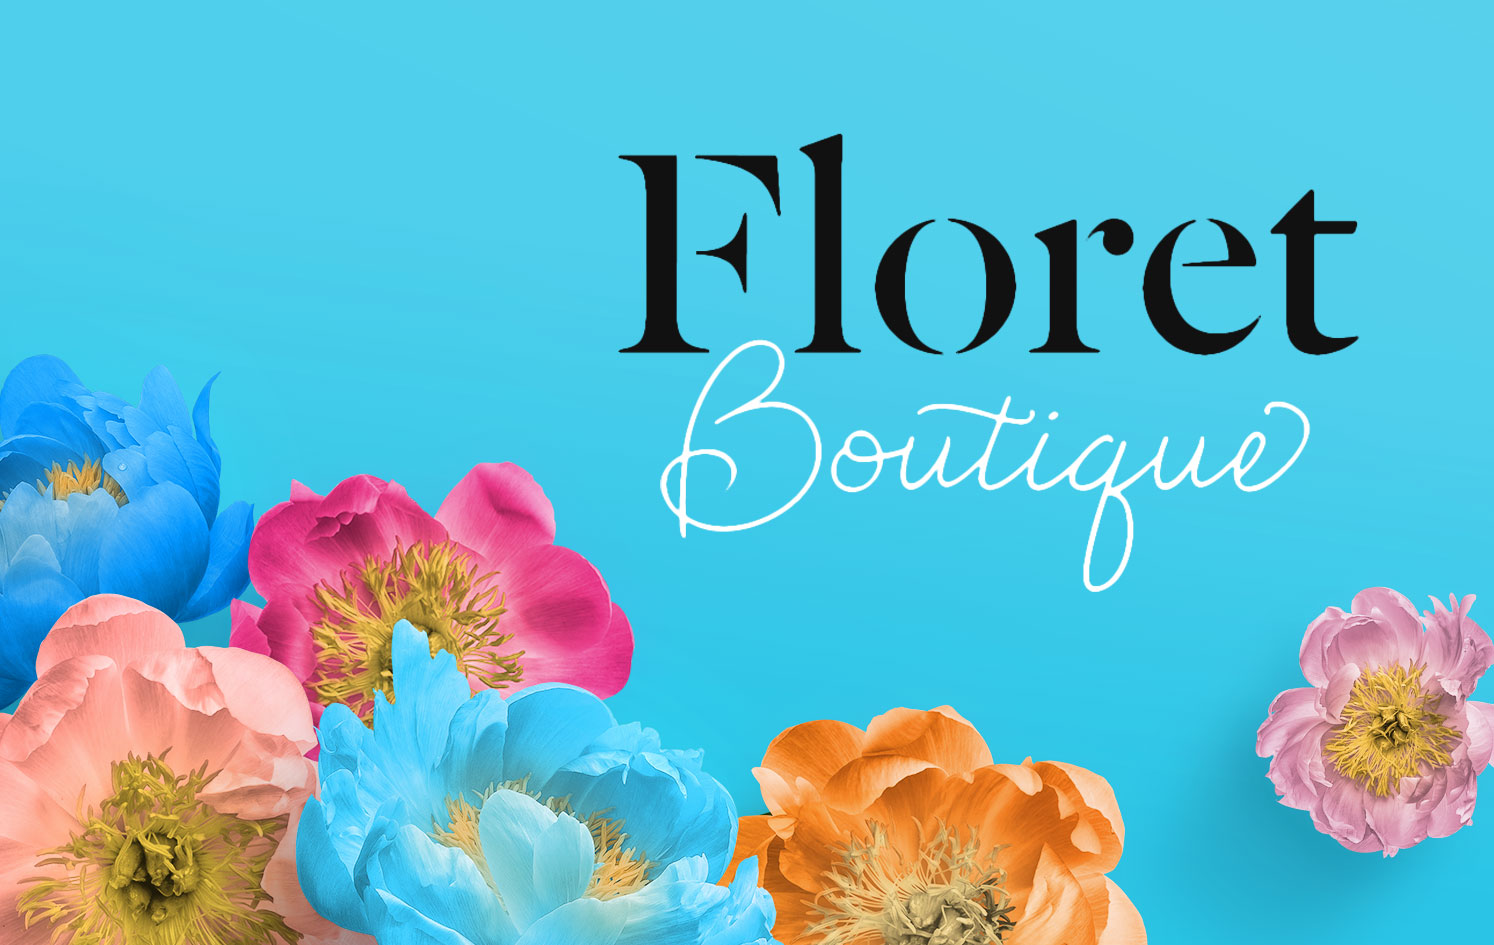 Perth Flower Shop Near Me - Online Florist